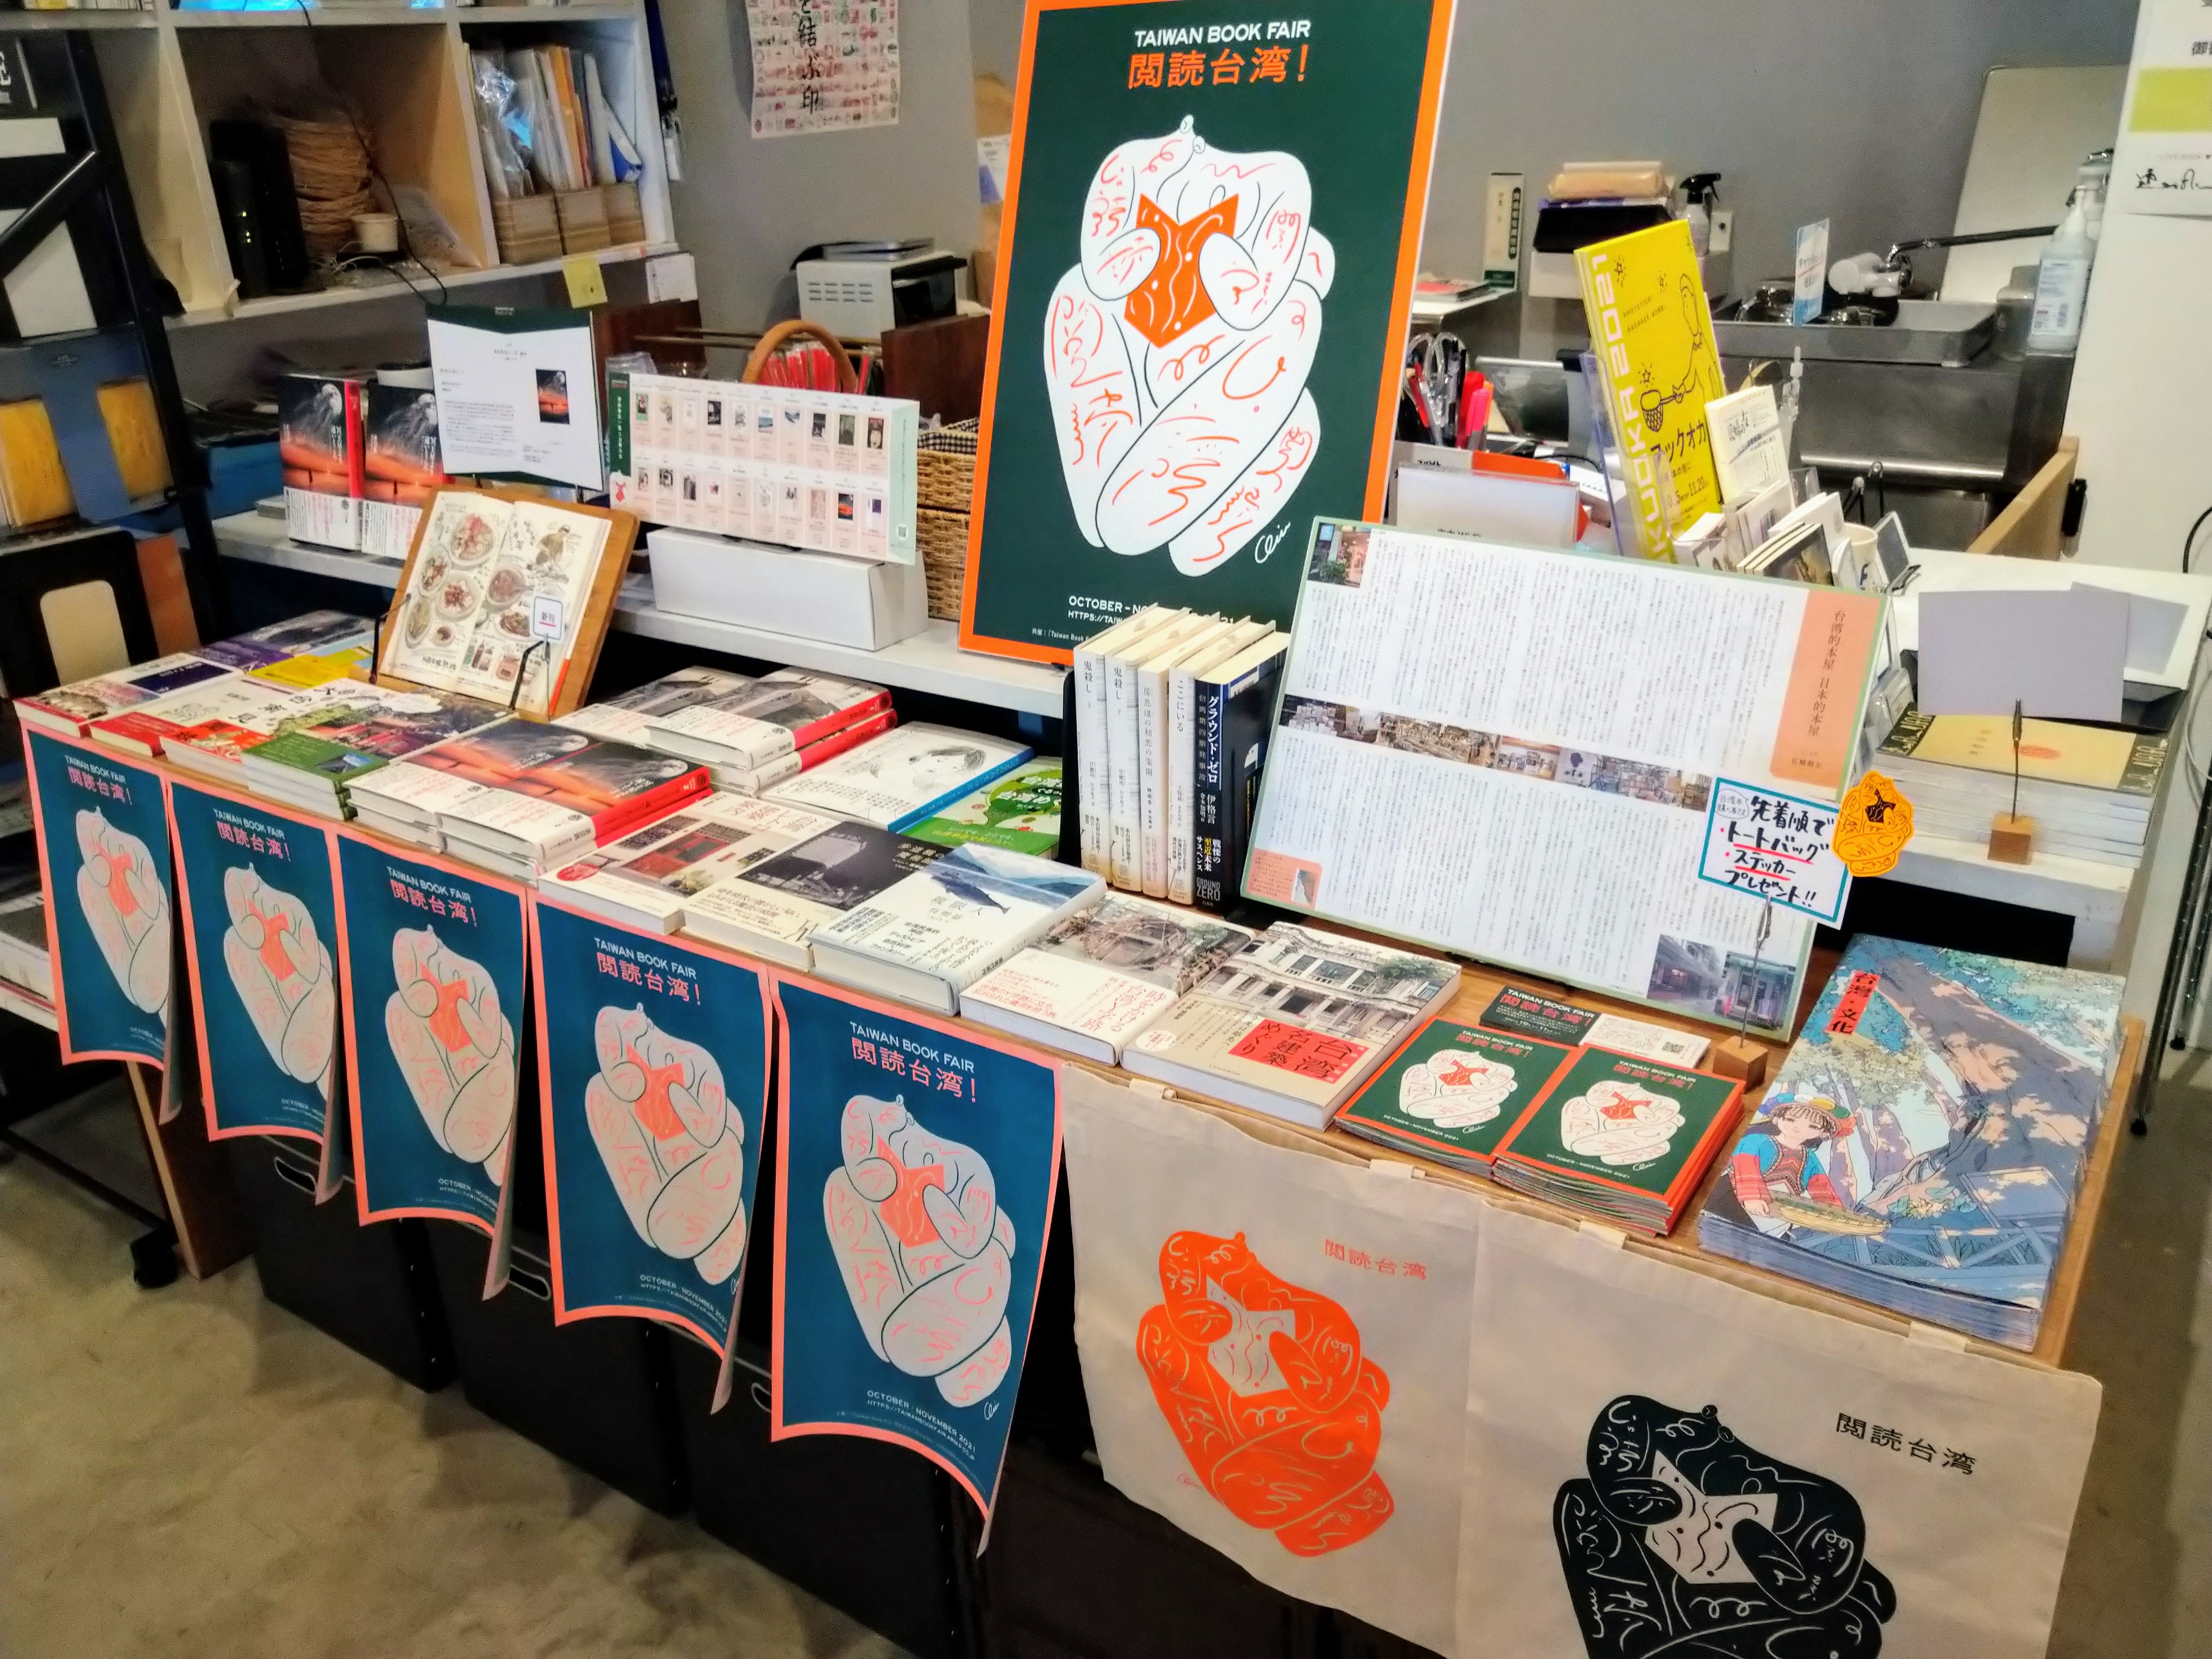 福岡有書的地方 ajiro書店「Taiwan Book Fair 閱讀台灣！」書展.JPG